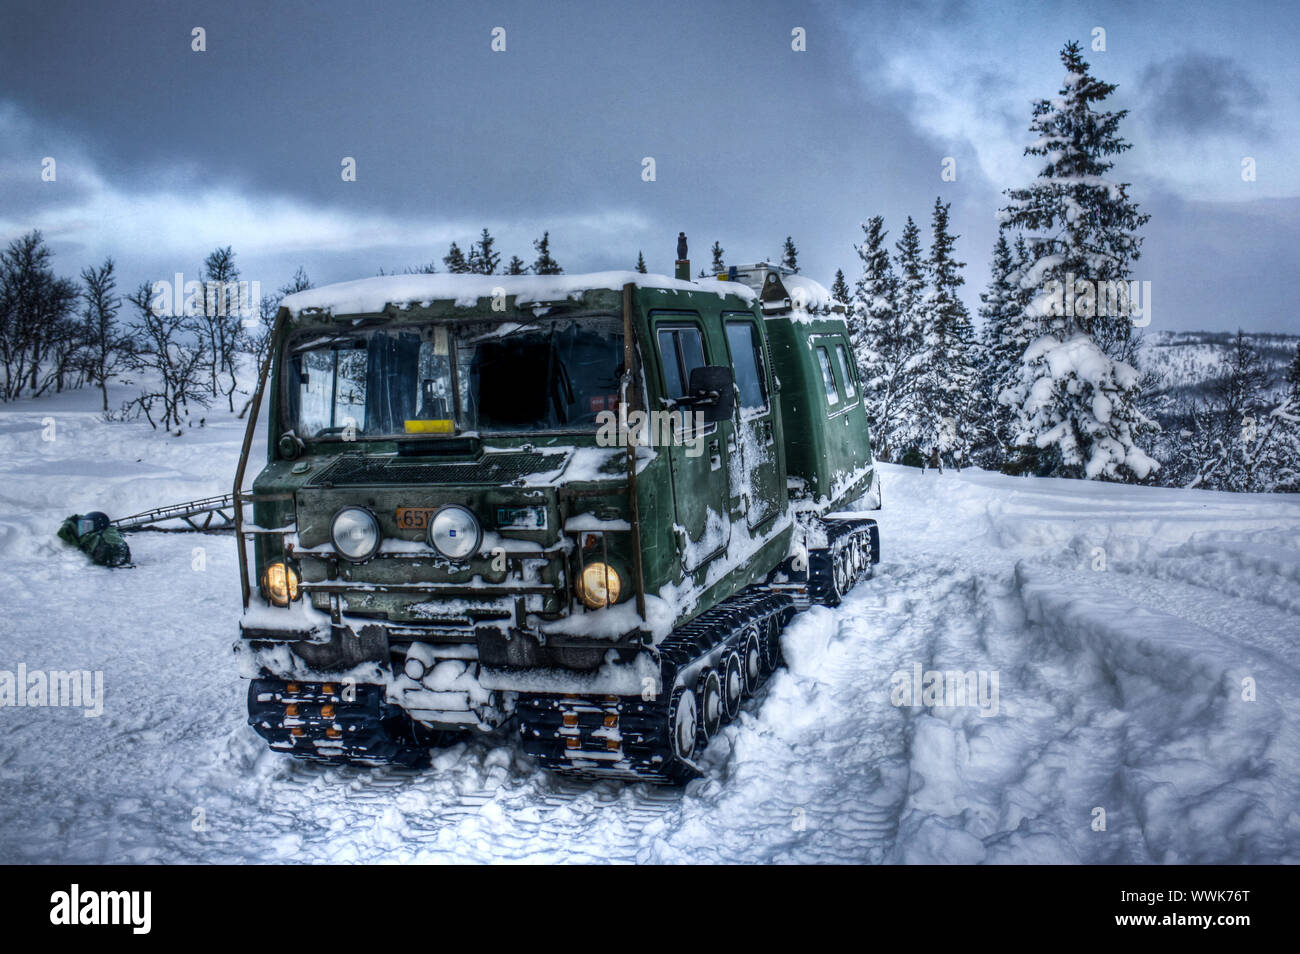 Bandvagn 206, vehículo oruga, cadenas para nieve, hielo Fotografía